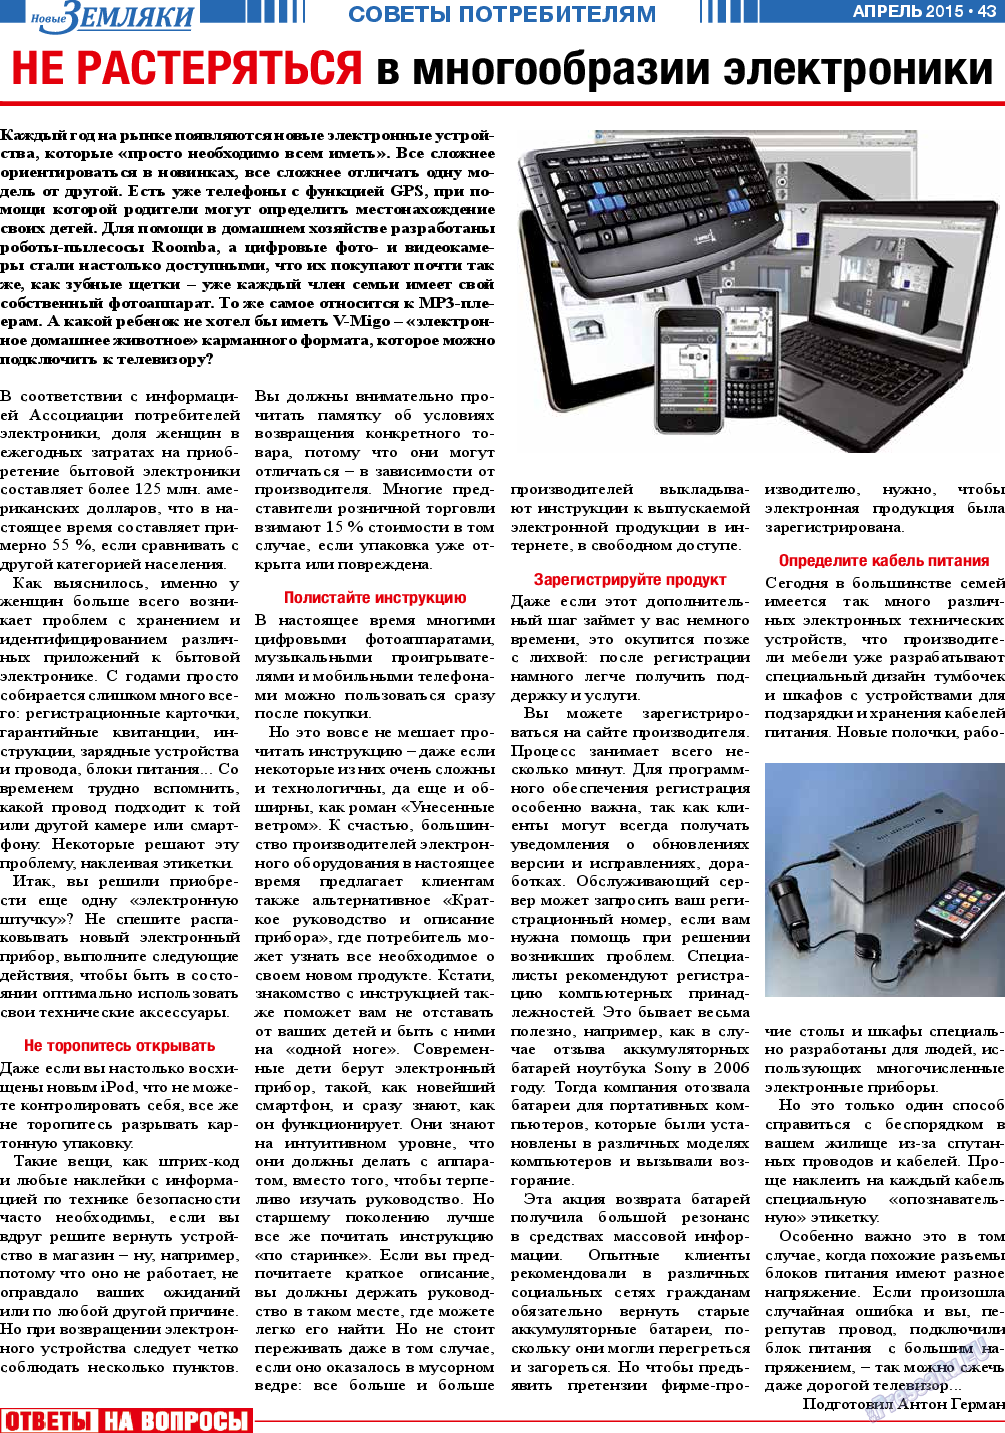 Новые Земляки, газета. 2015 №4 стр.43